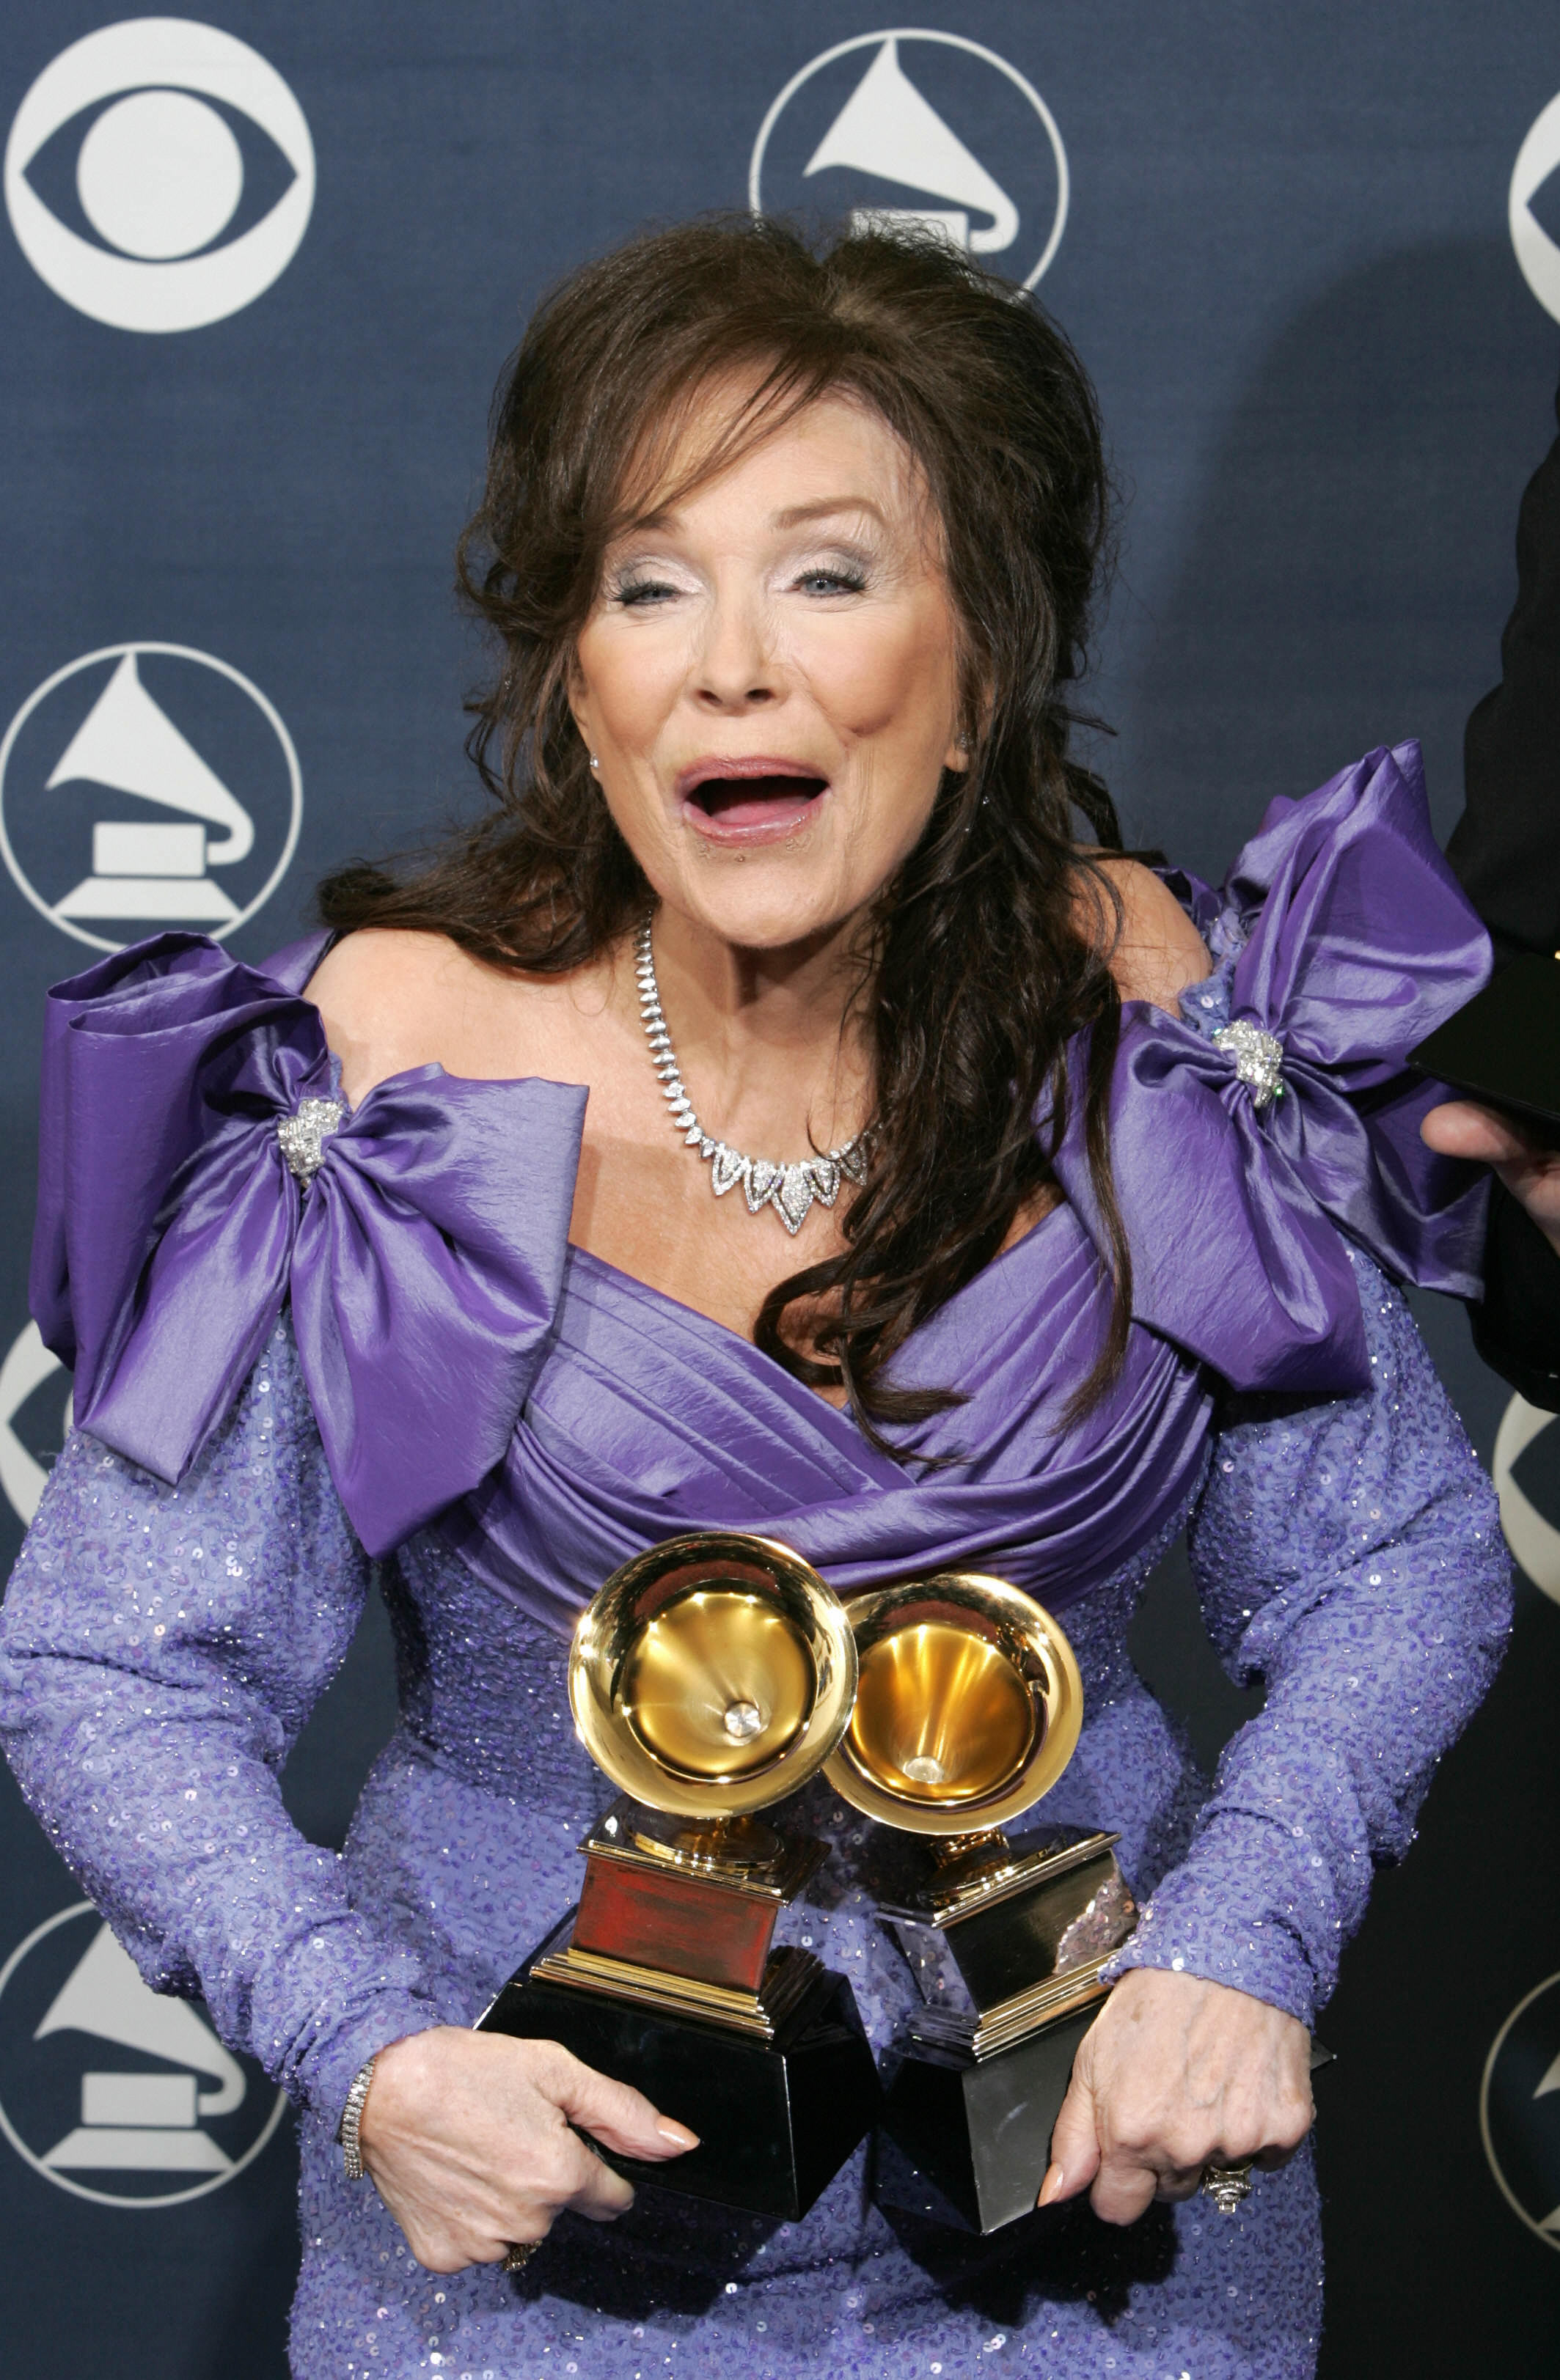 Loretta Lynne pose avec les prix qu'elle a remportés lors de la cérémonie des Grammys à Los Angeles le 13 février 2005. | Source : Getty Images